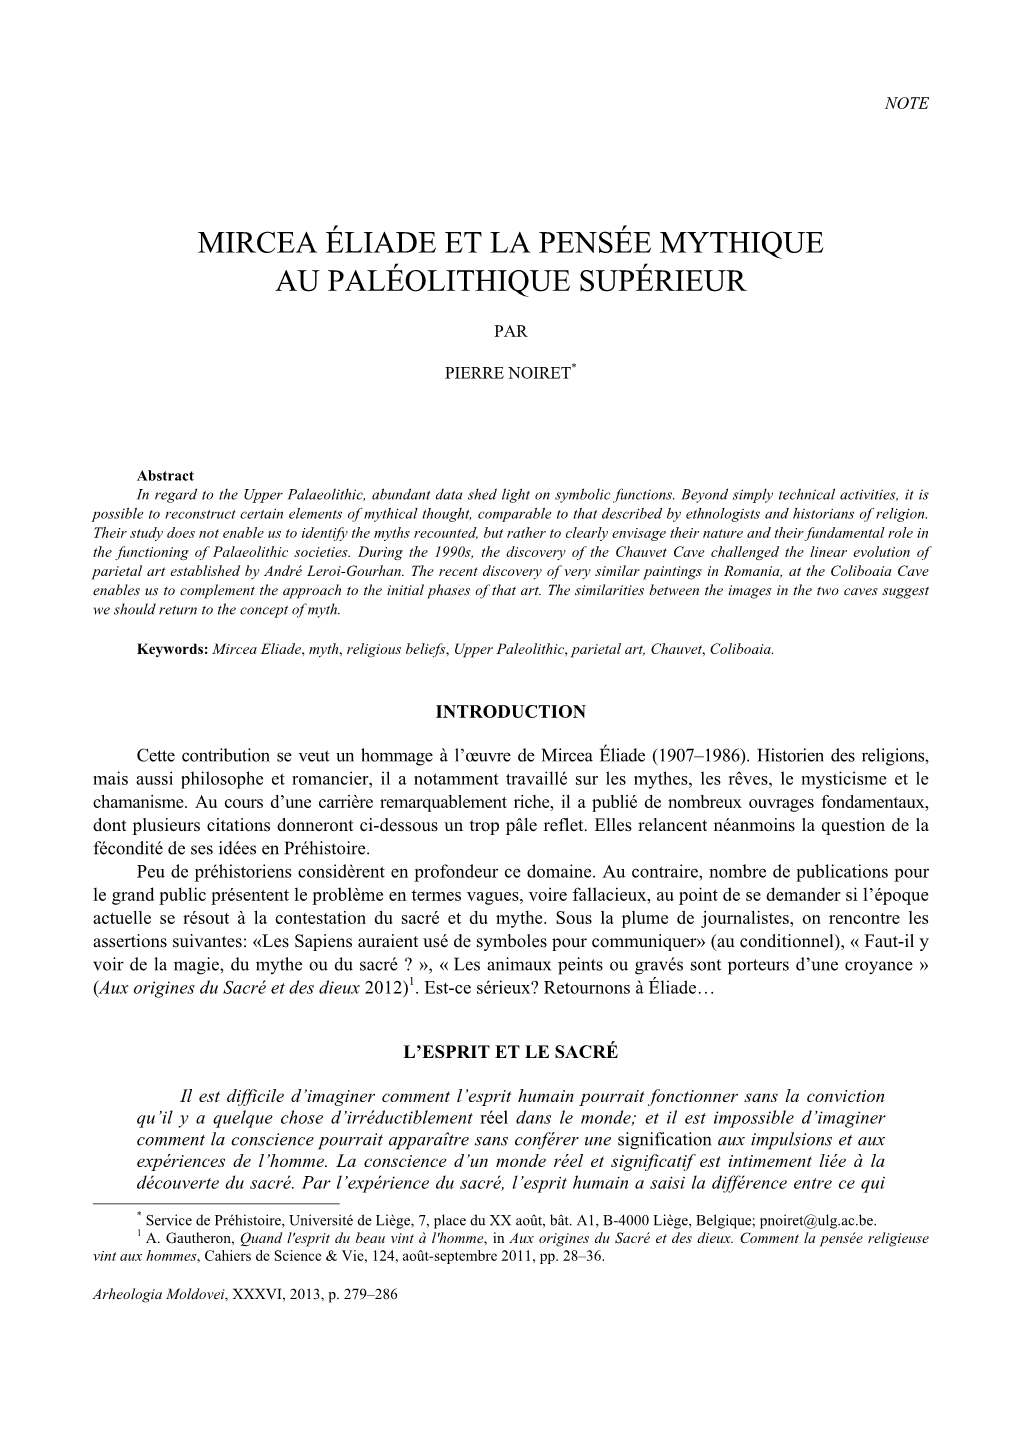 Mircea Éliade Et La Pensée Mythique Au Paléolithique Supérieur